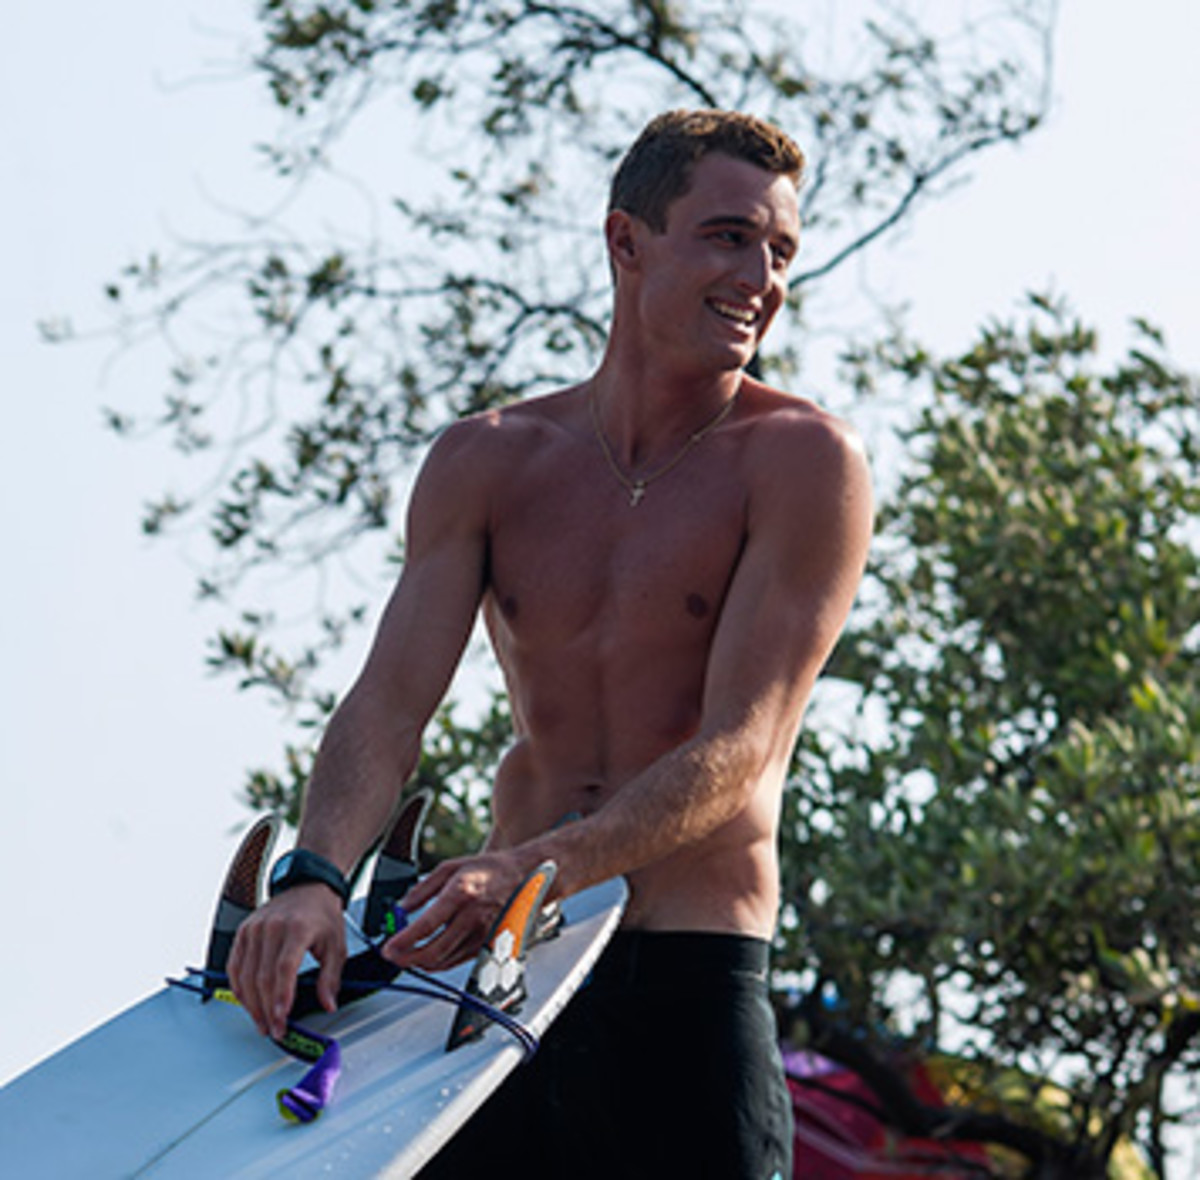 Pro surfer Matt Banting